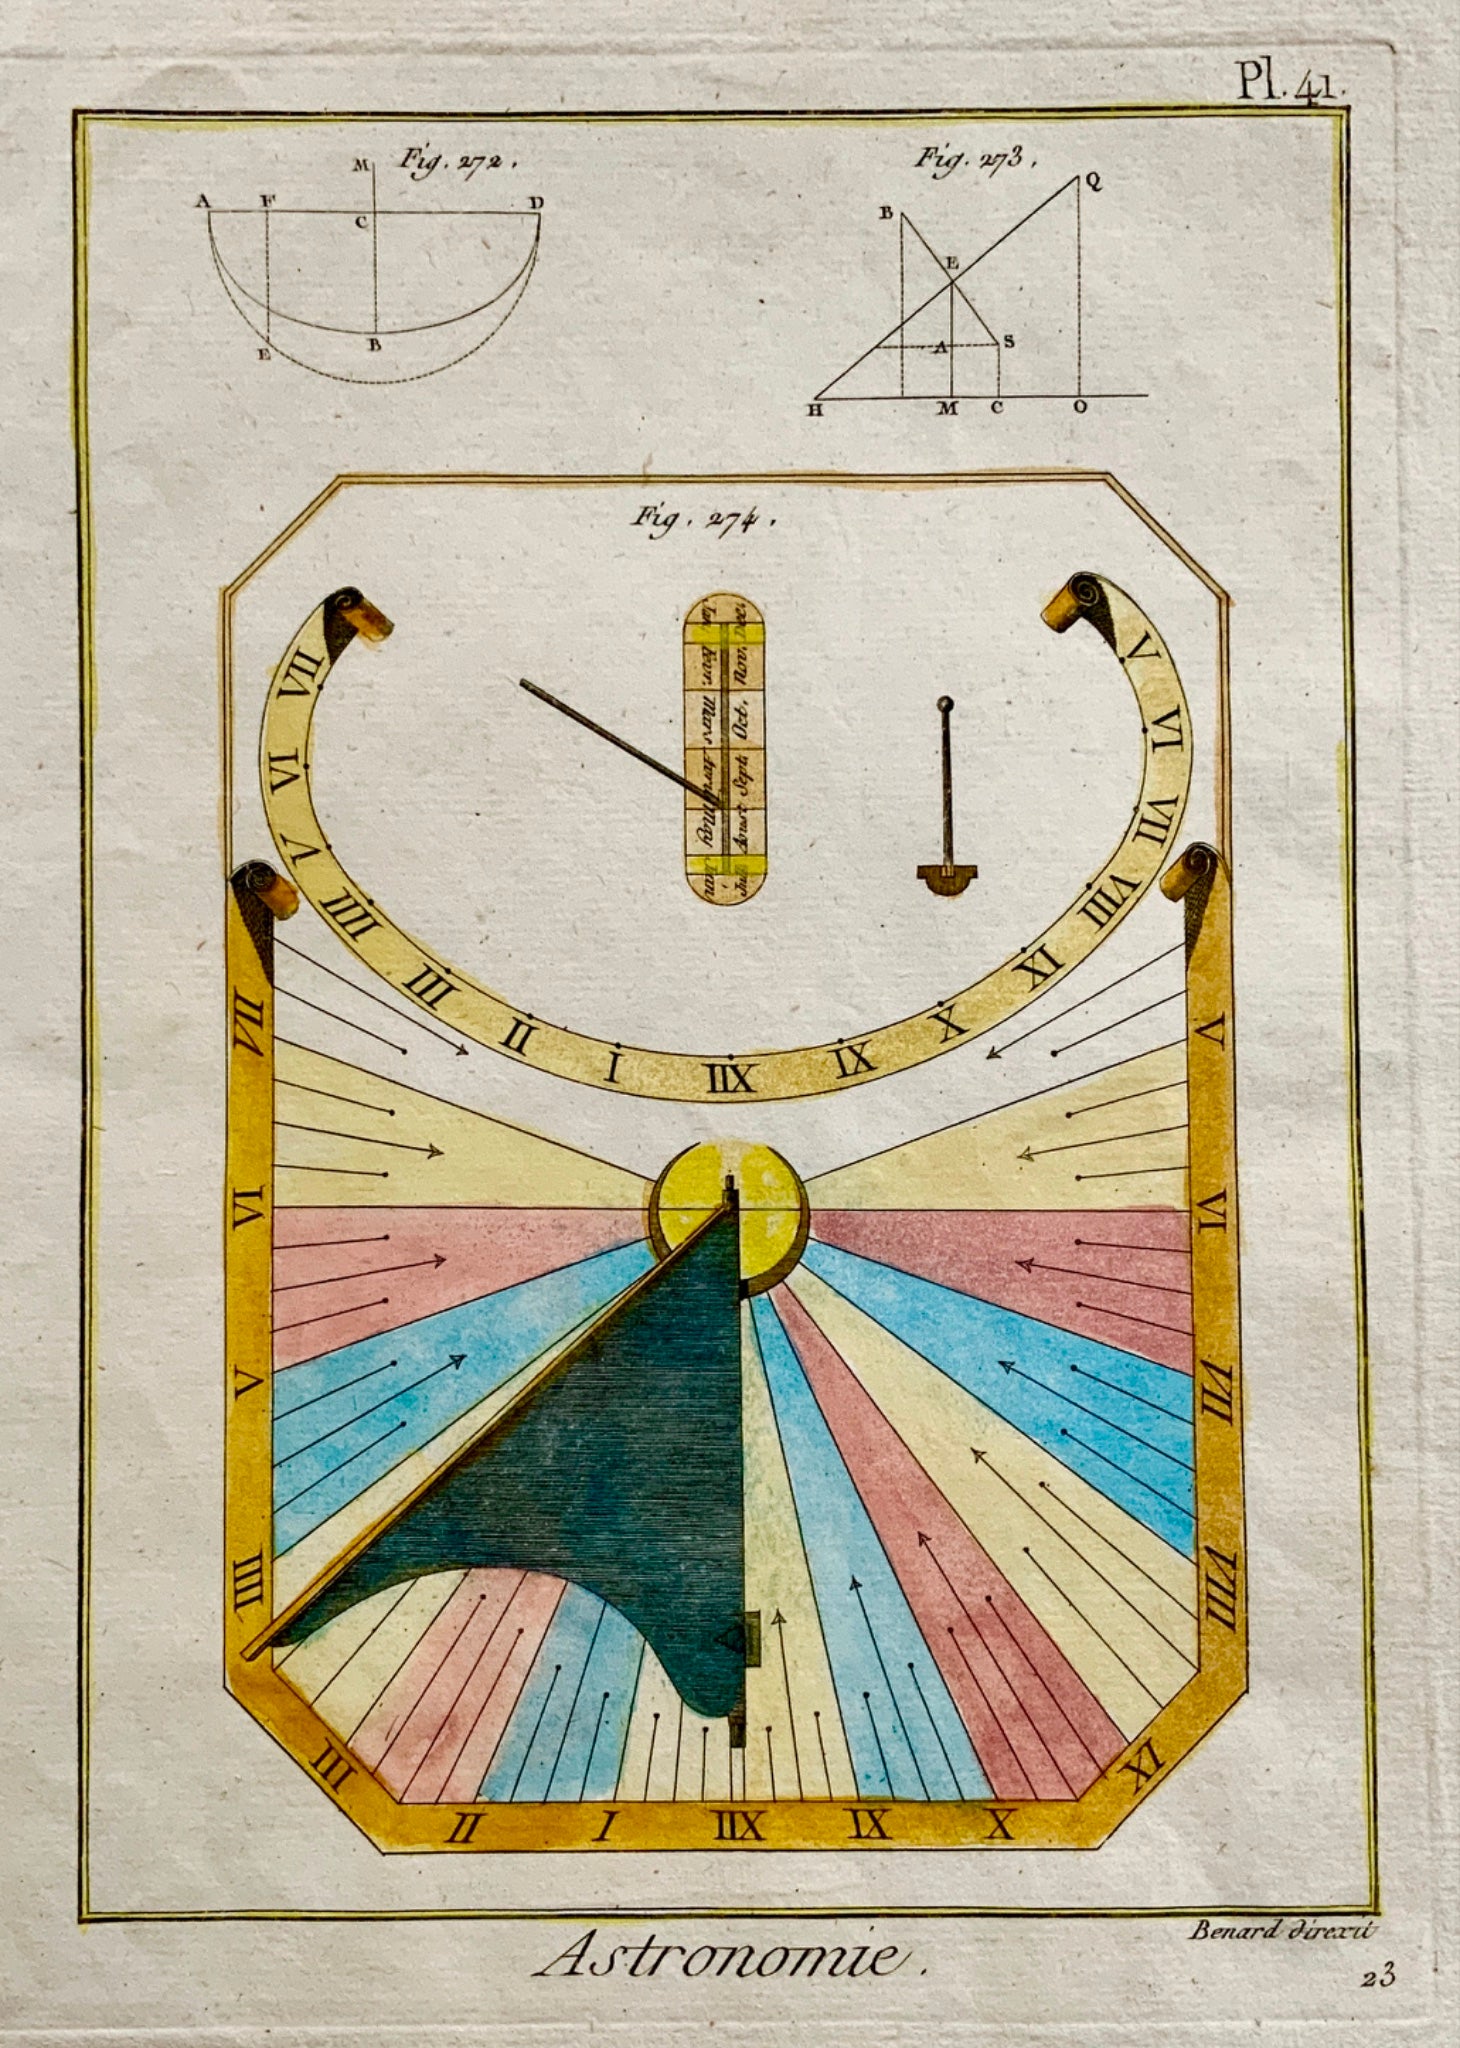 1789 Benard - Astronomie SUN DIAL - Hand colour quarto engraving - Astronomy